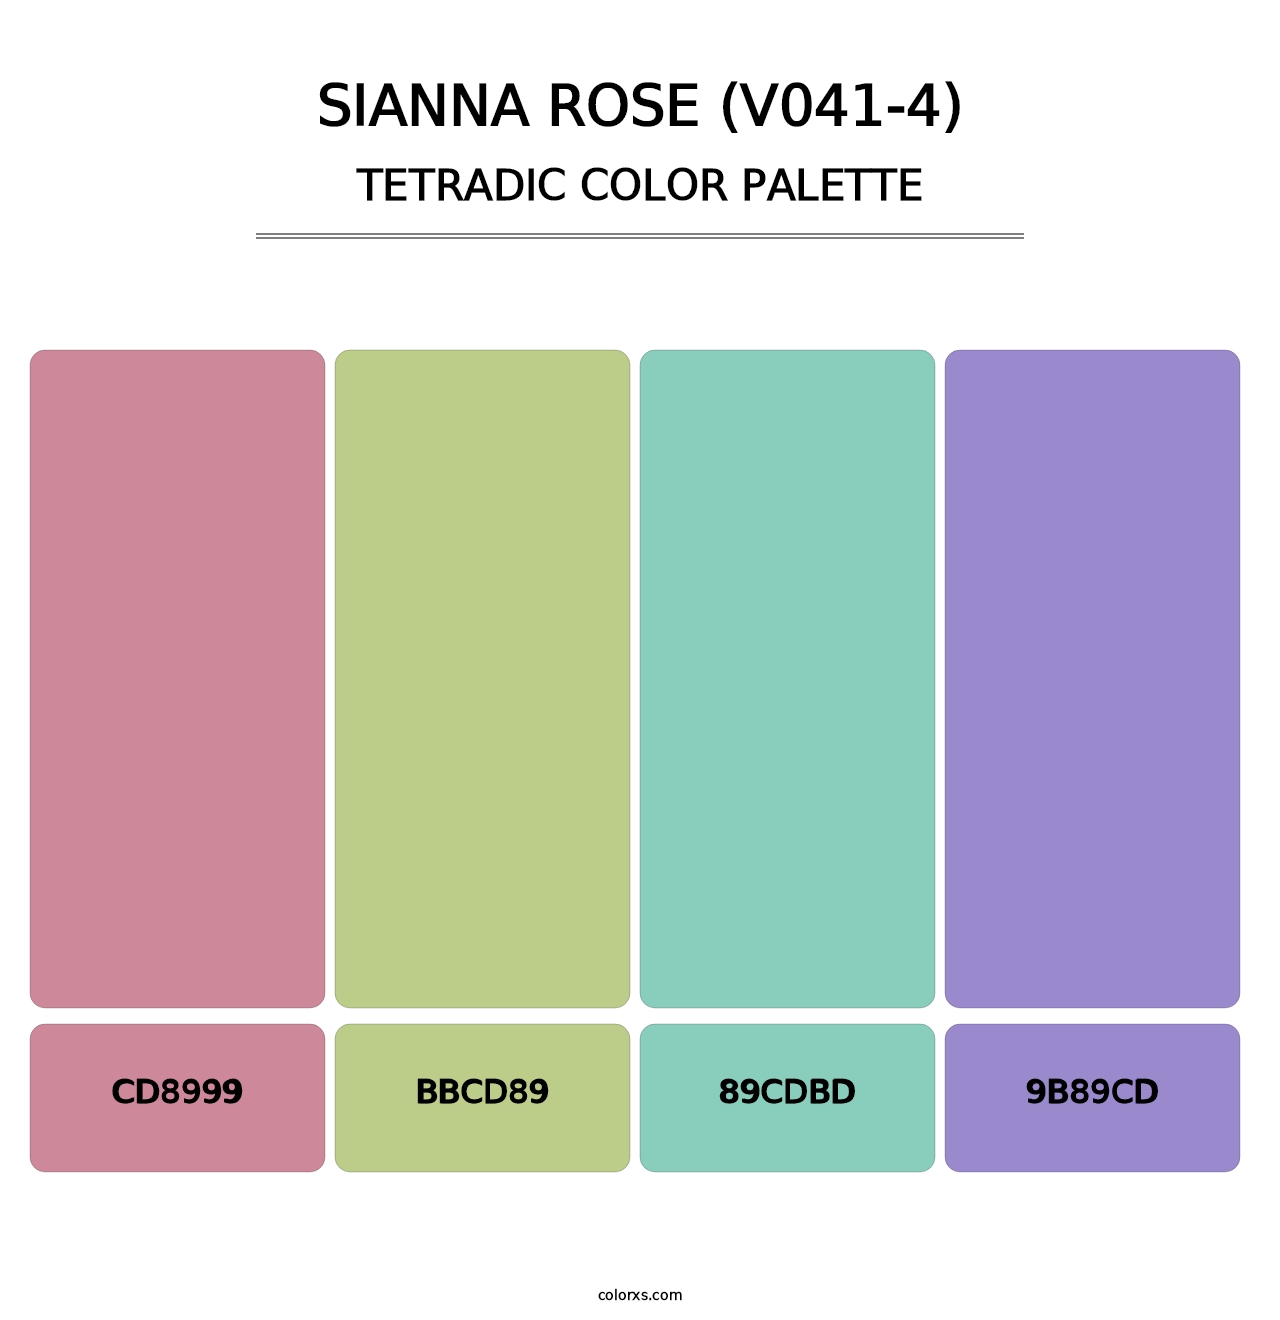 Sianna Rose (V041-4) - Tetradic Color Palette